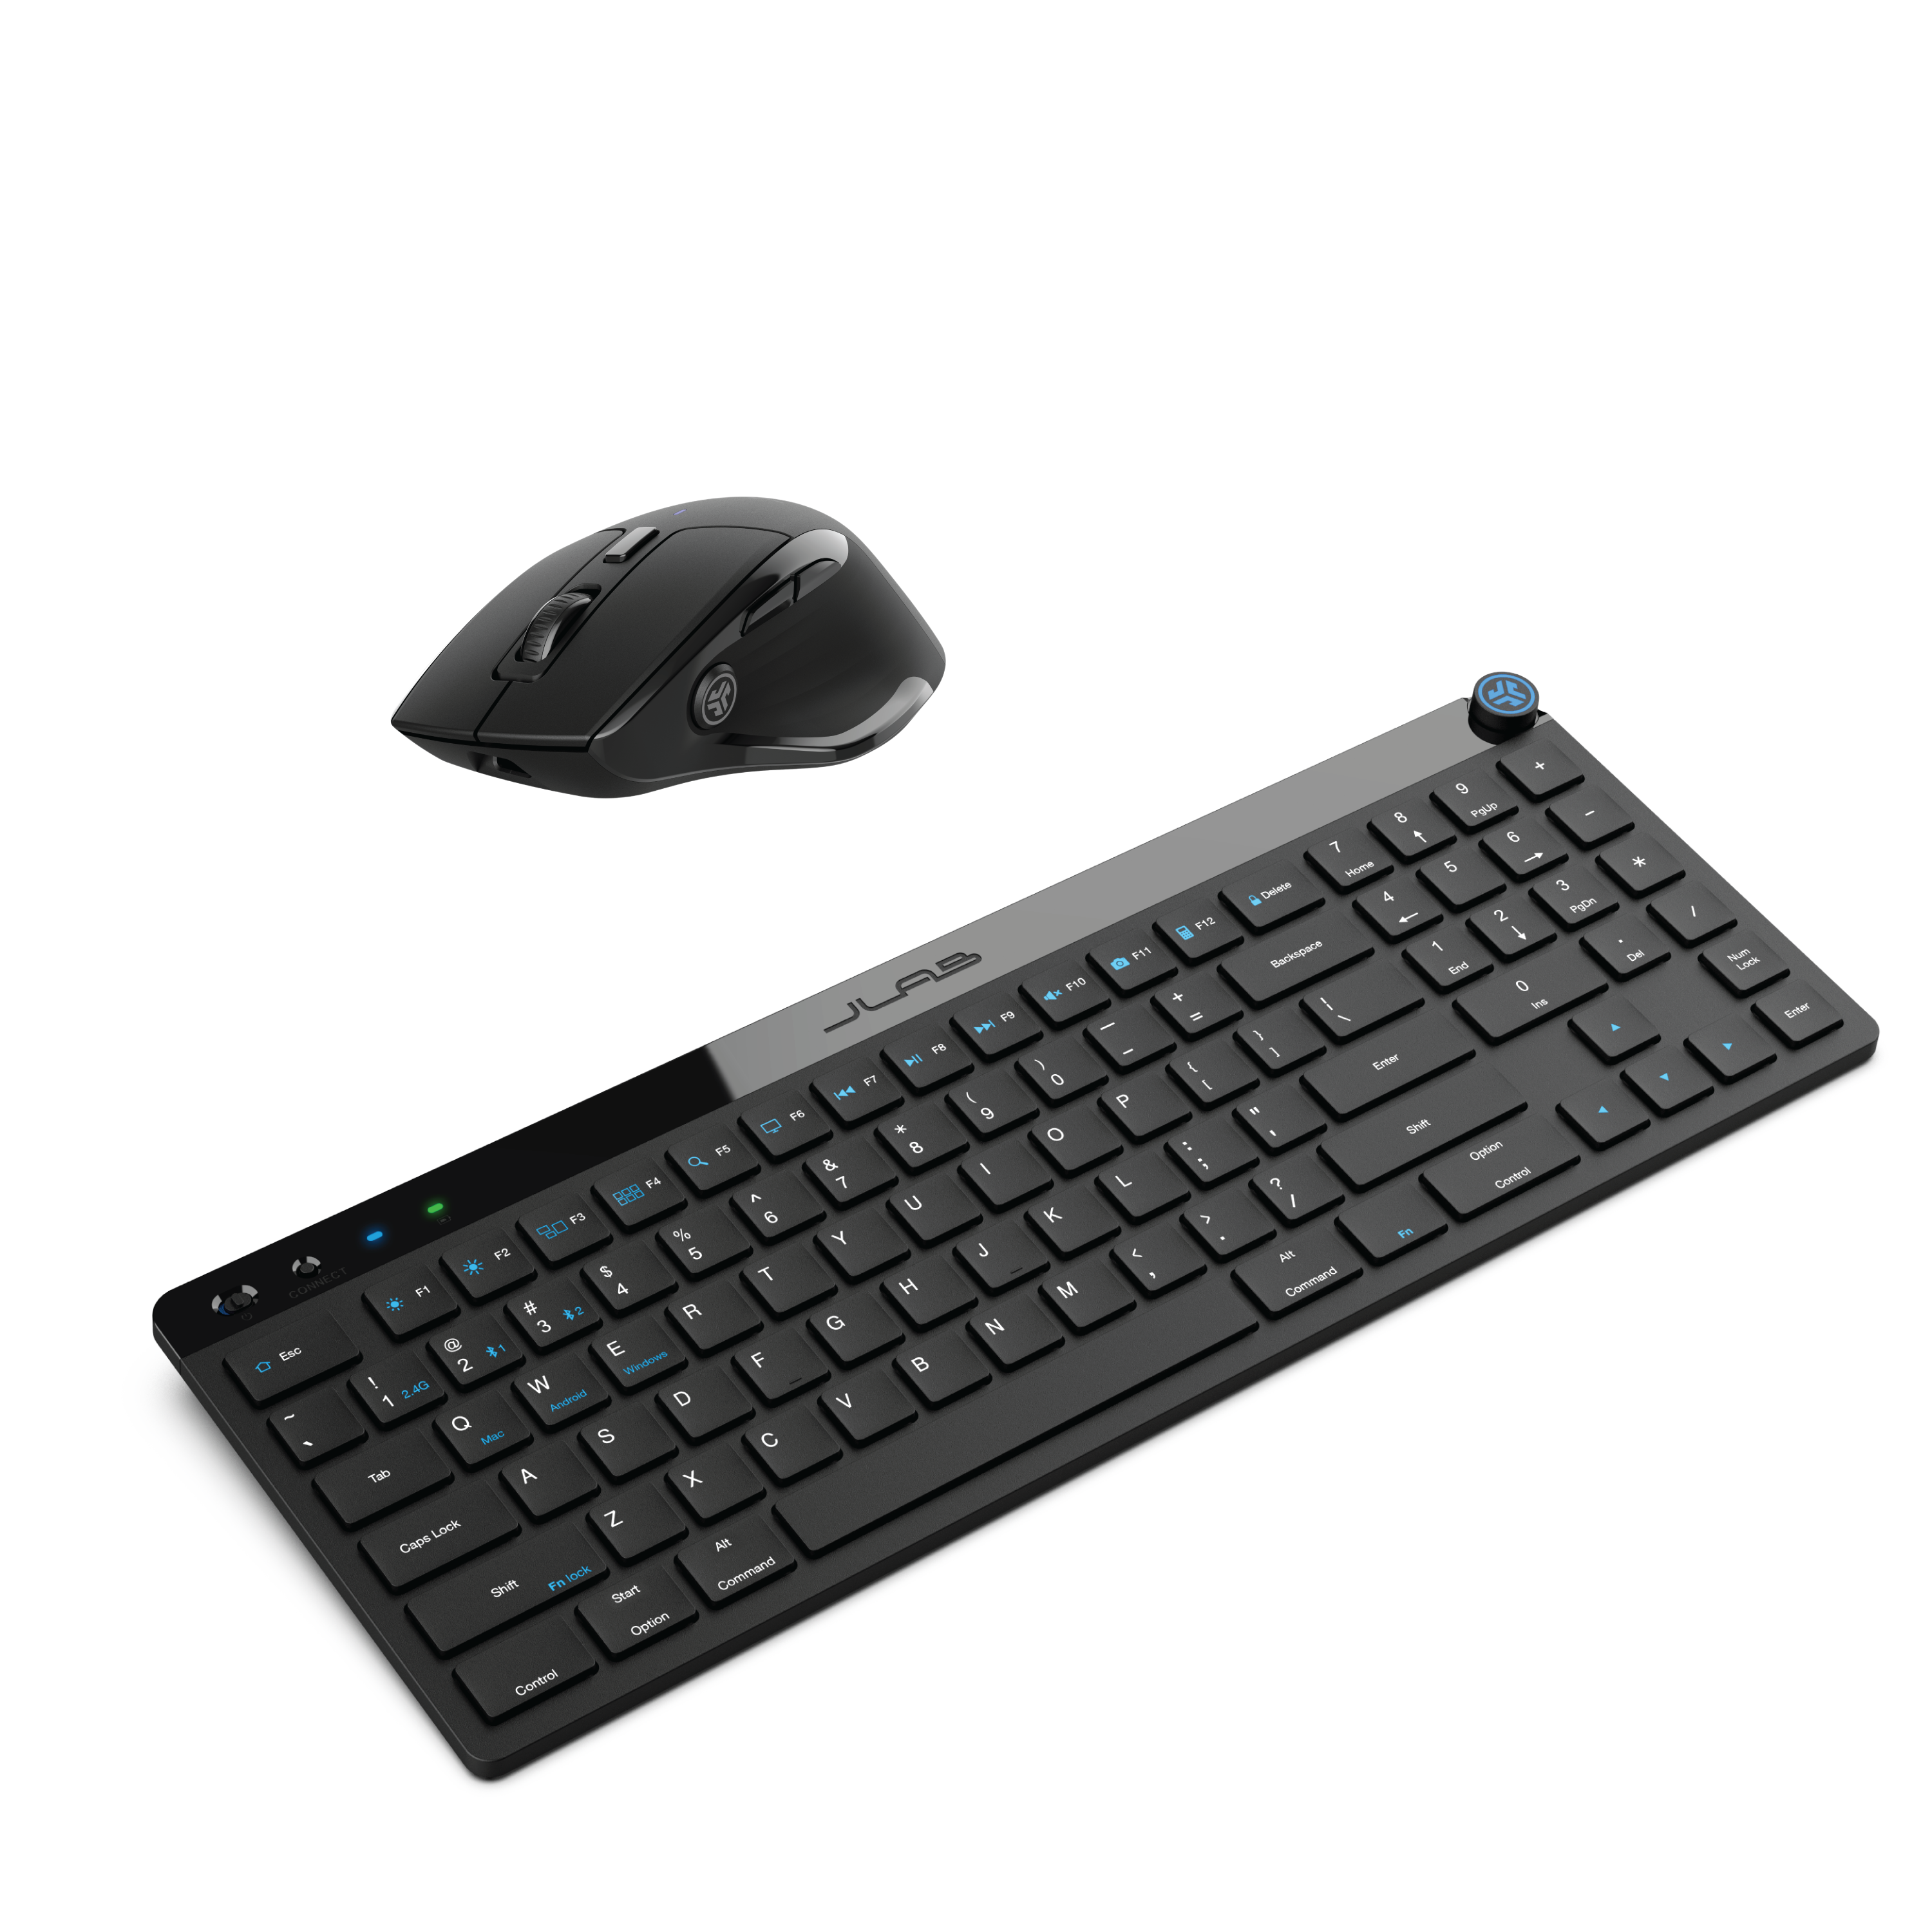 JBuds Keyboard Mouse Bundle